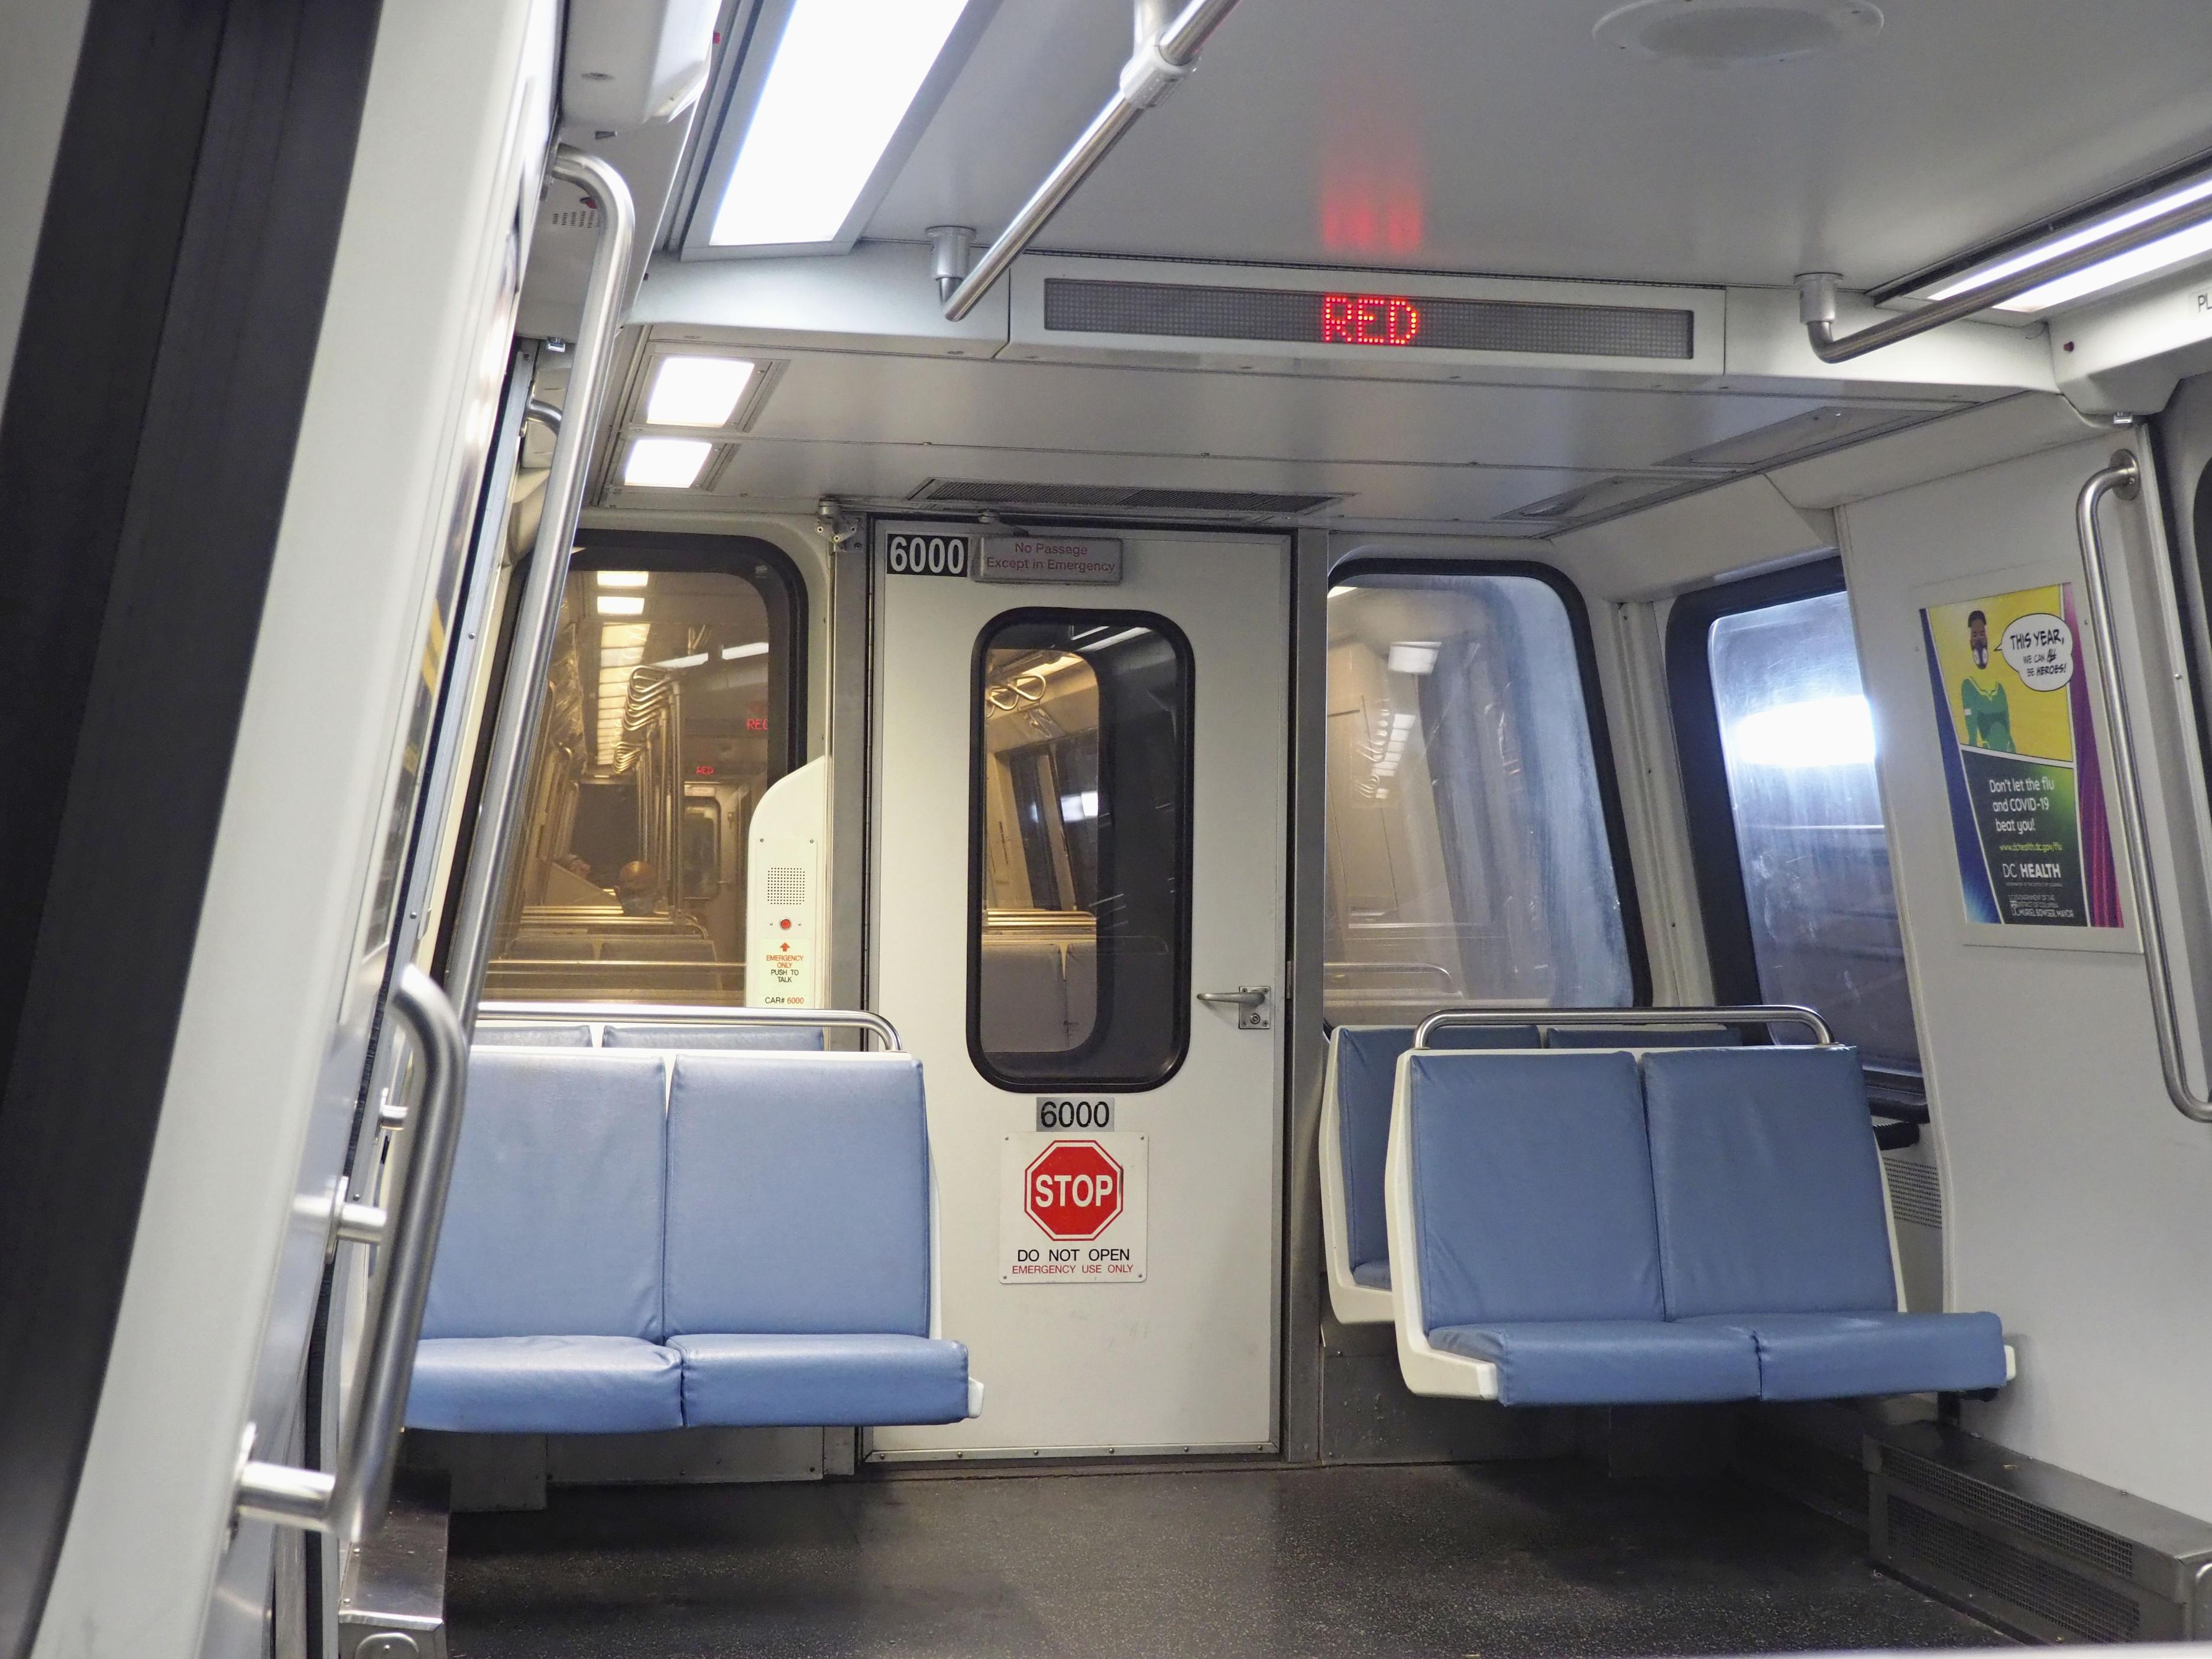 米地下鉄では珍しい連結部分に通路 日立製車両 - 産経ニュース